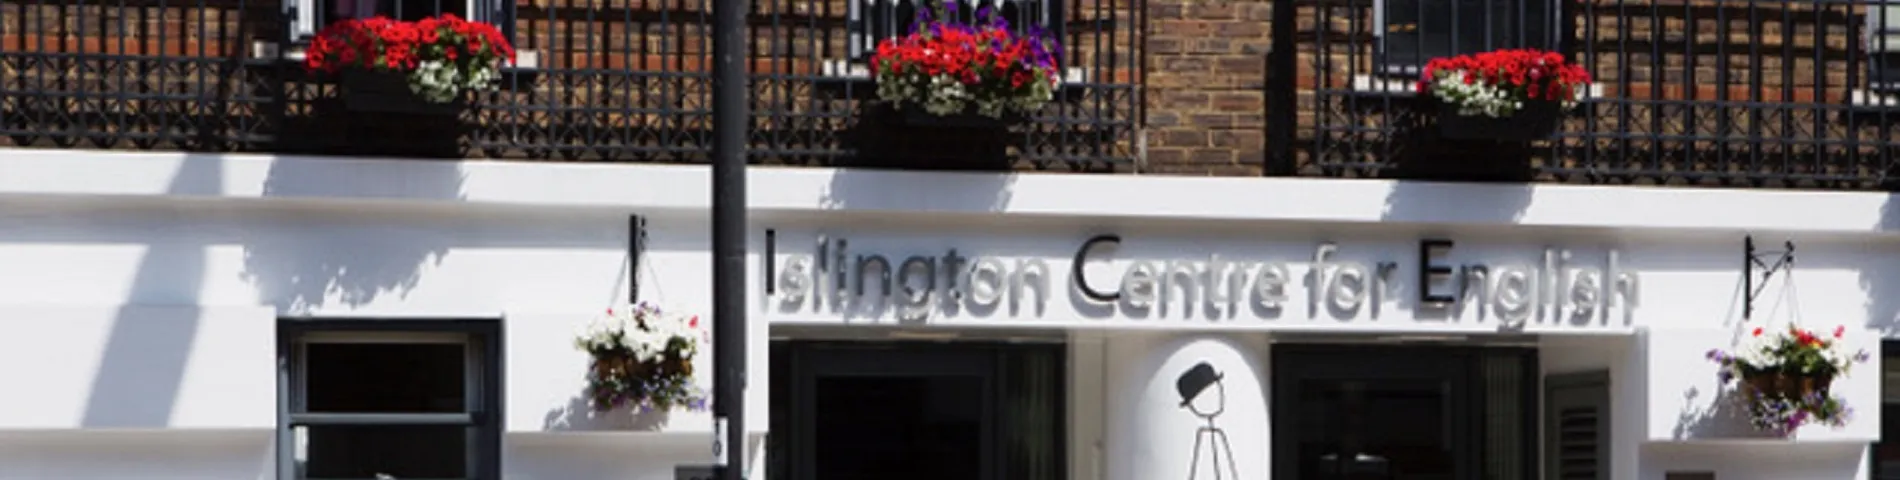 Islington Centre for English immagine 1